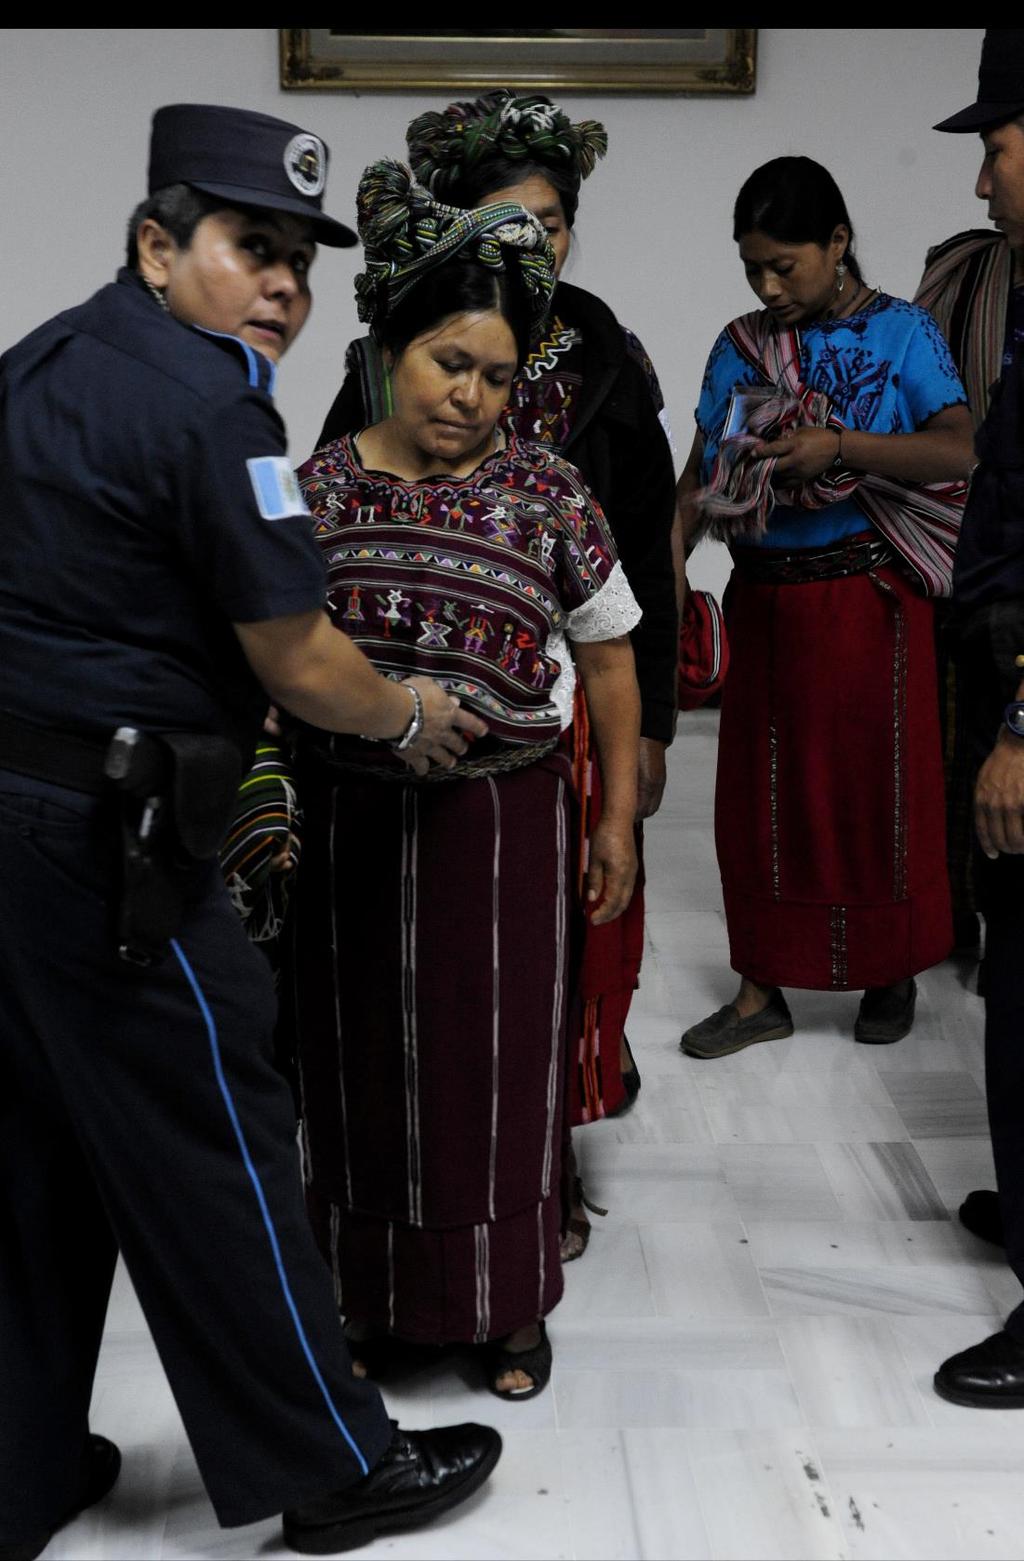 Mujeres Ixiles sometidas a revisión en la entrada de una audiencia en un Tribunal guatemalteco en donde se